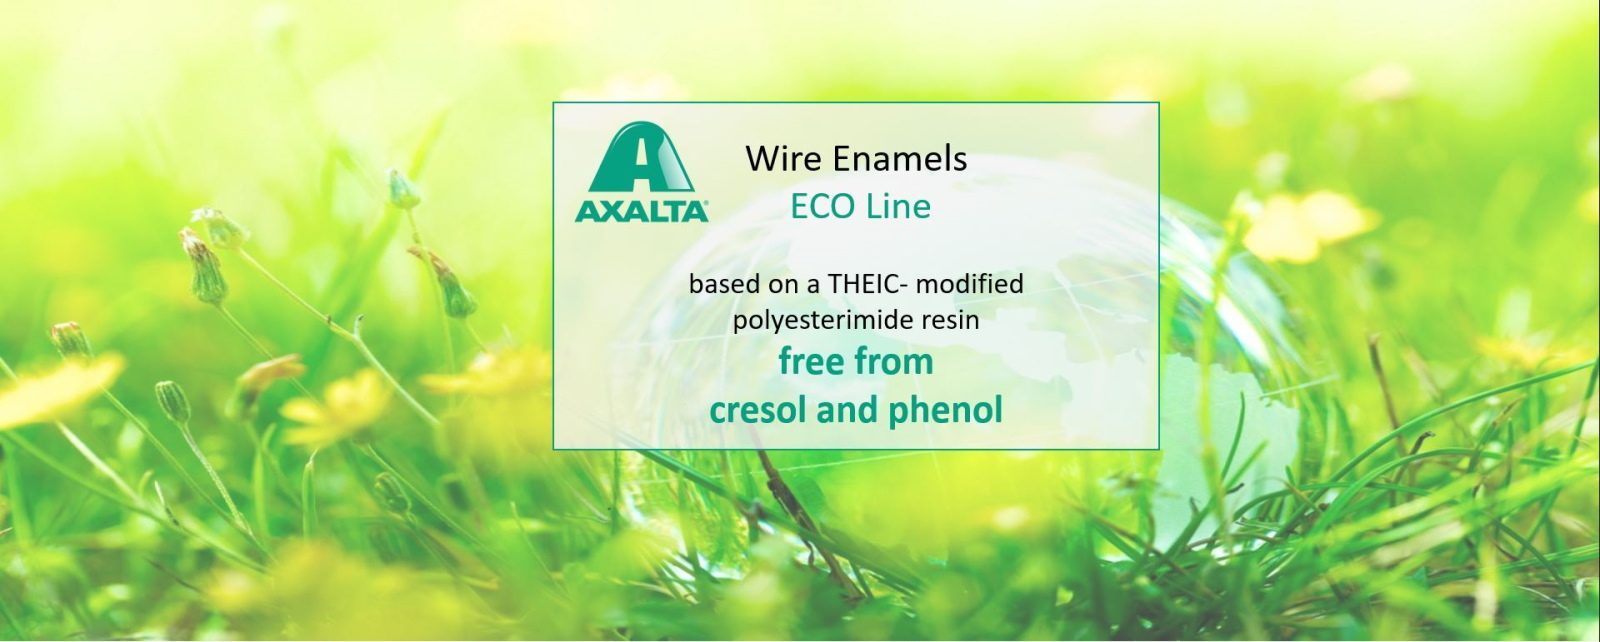 Axalta Wire Enamels  ECO Line